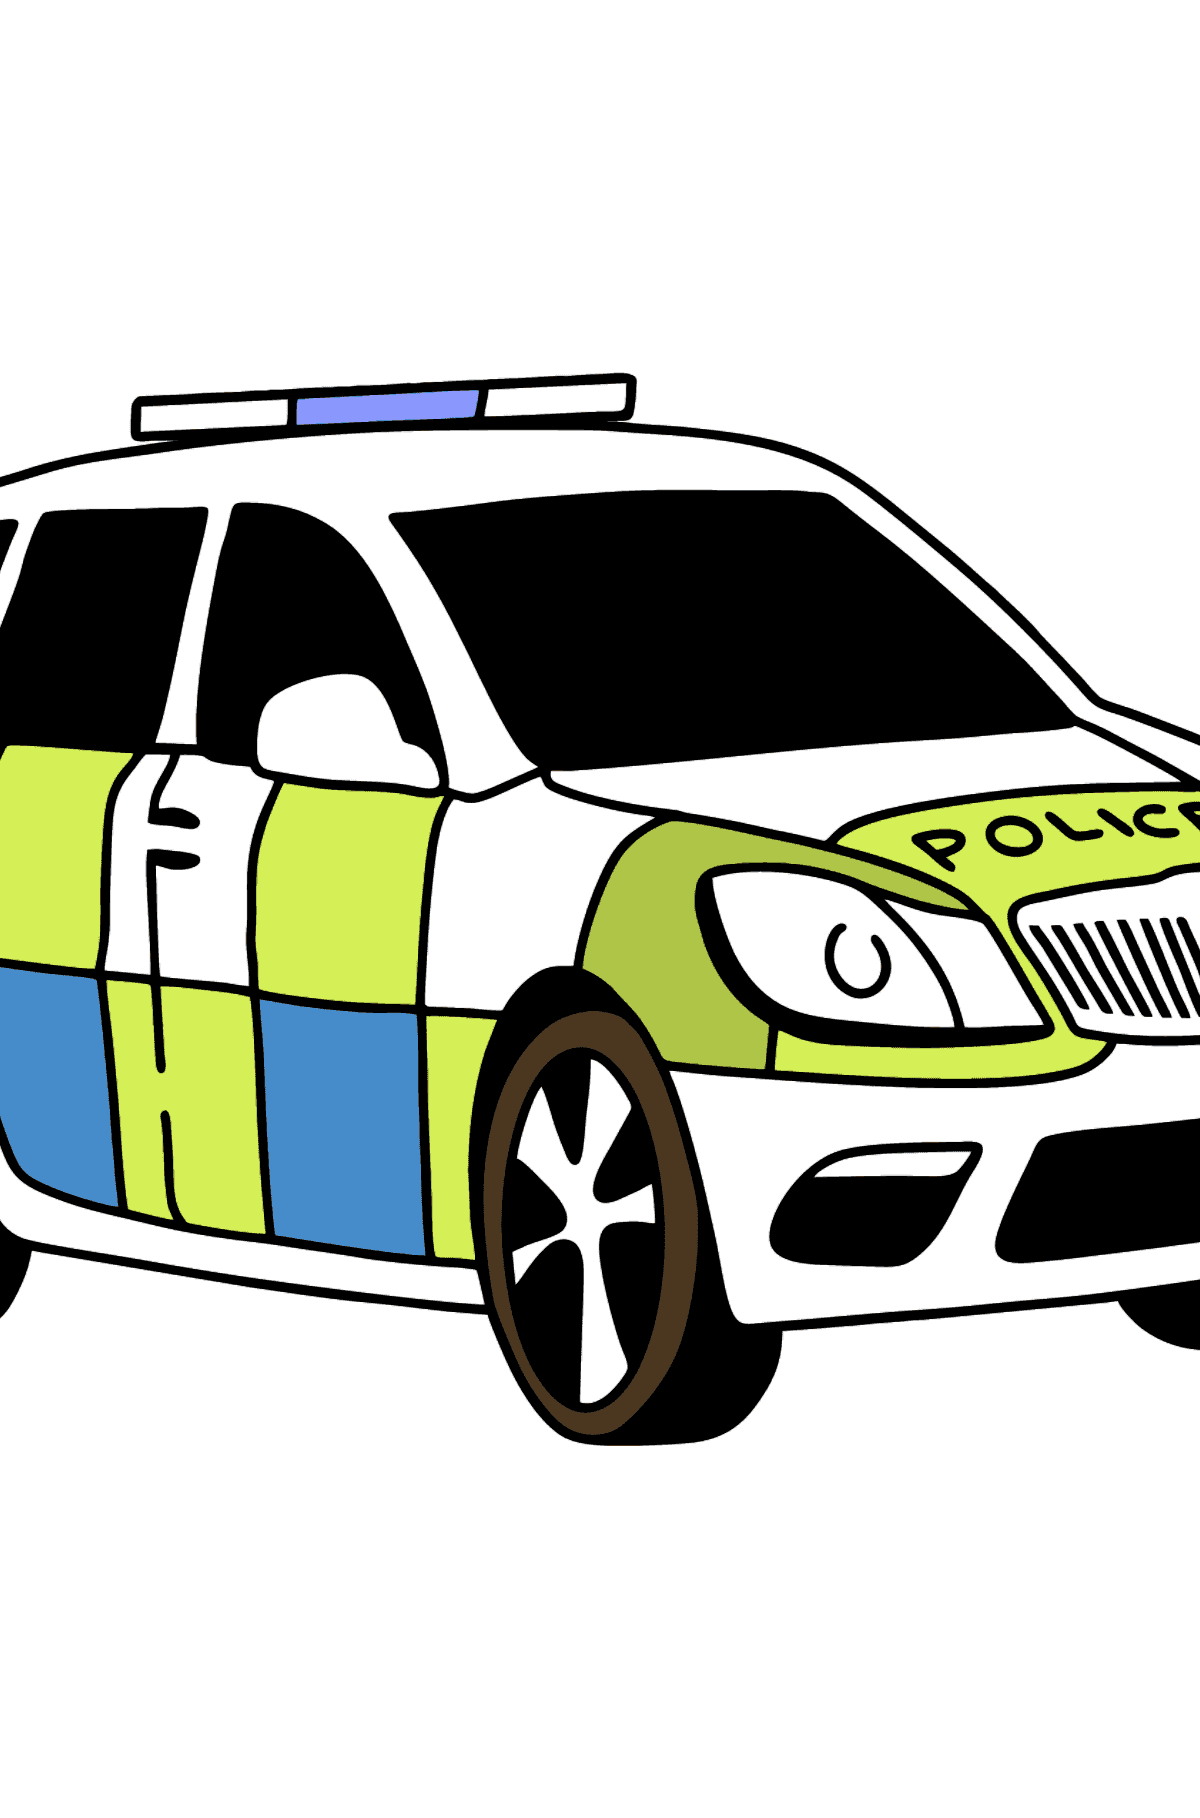 UK Police Car Ausmalbild - Malvorlagen für Kinder